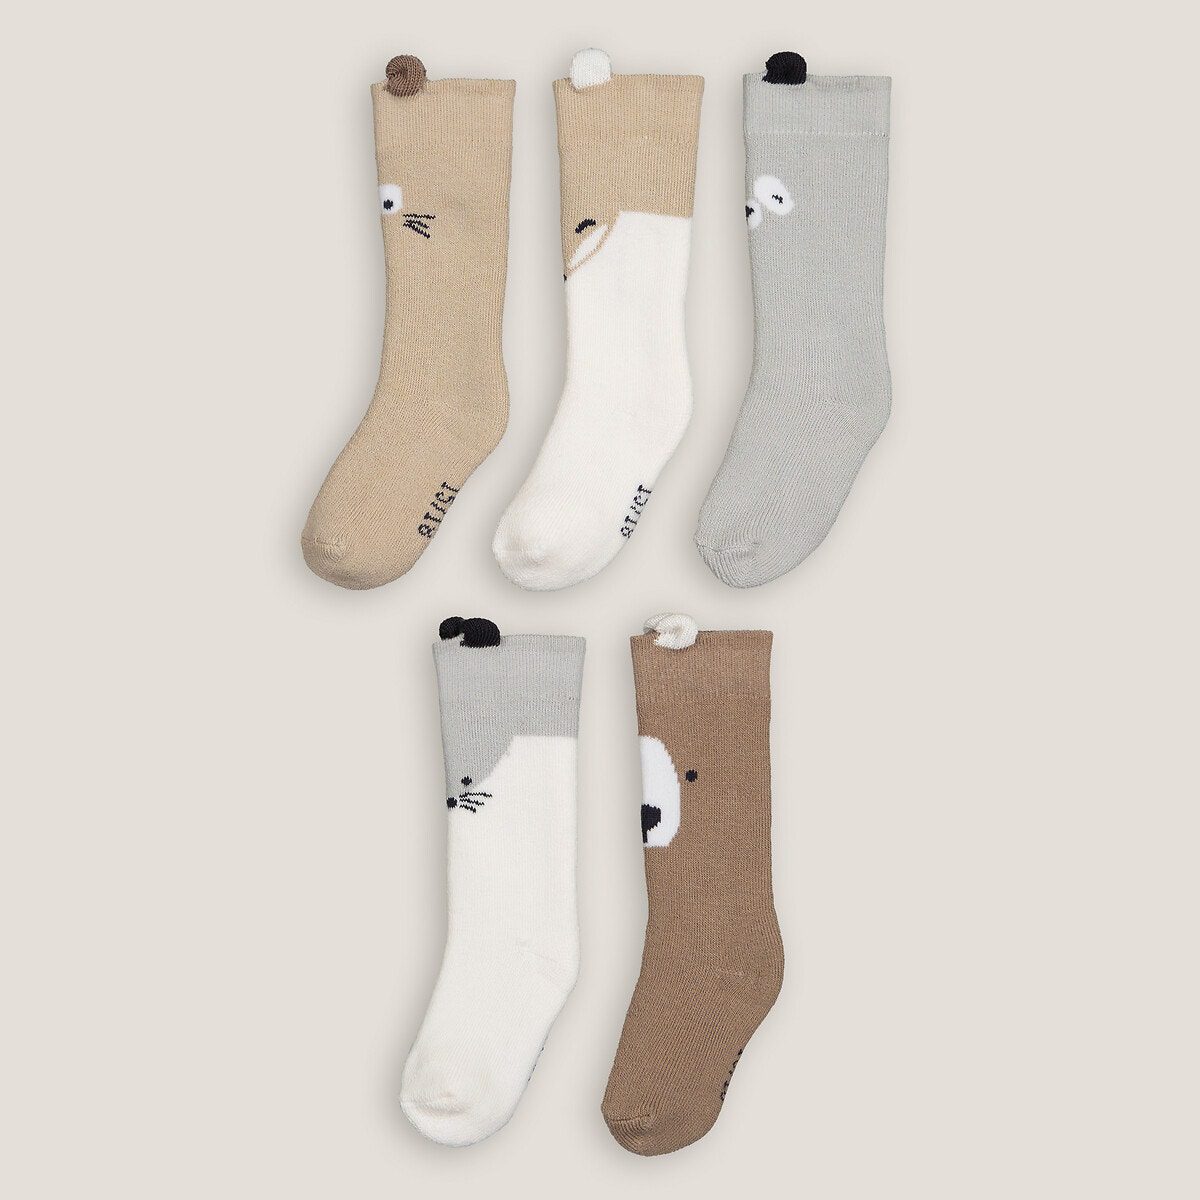 Σετ 5 ζευγάρια κάλτσες με μοτίβο ζώα Διαφορα Χρωματα